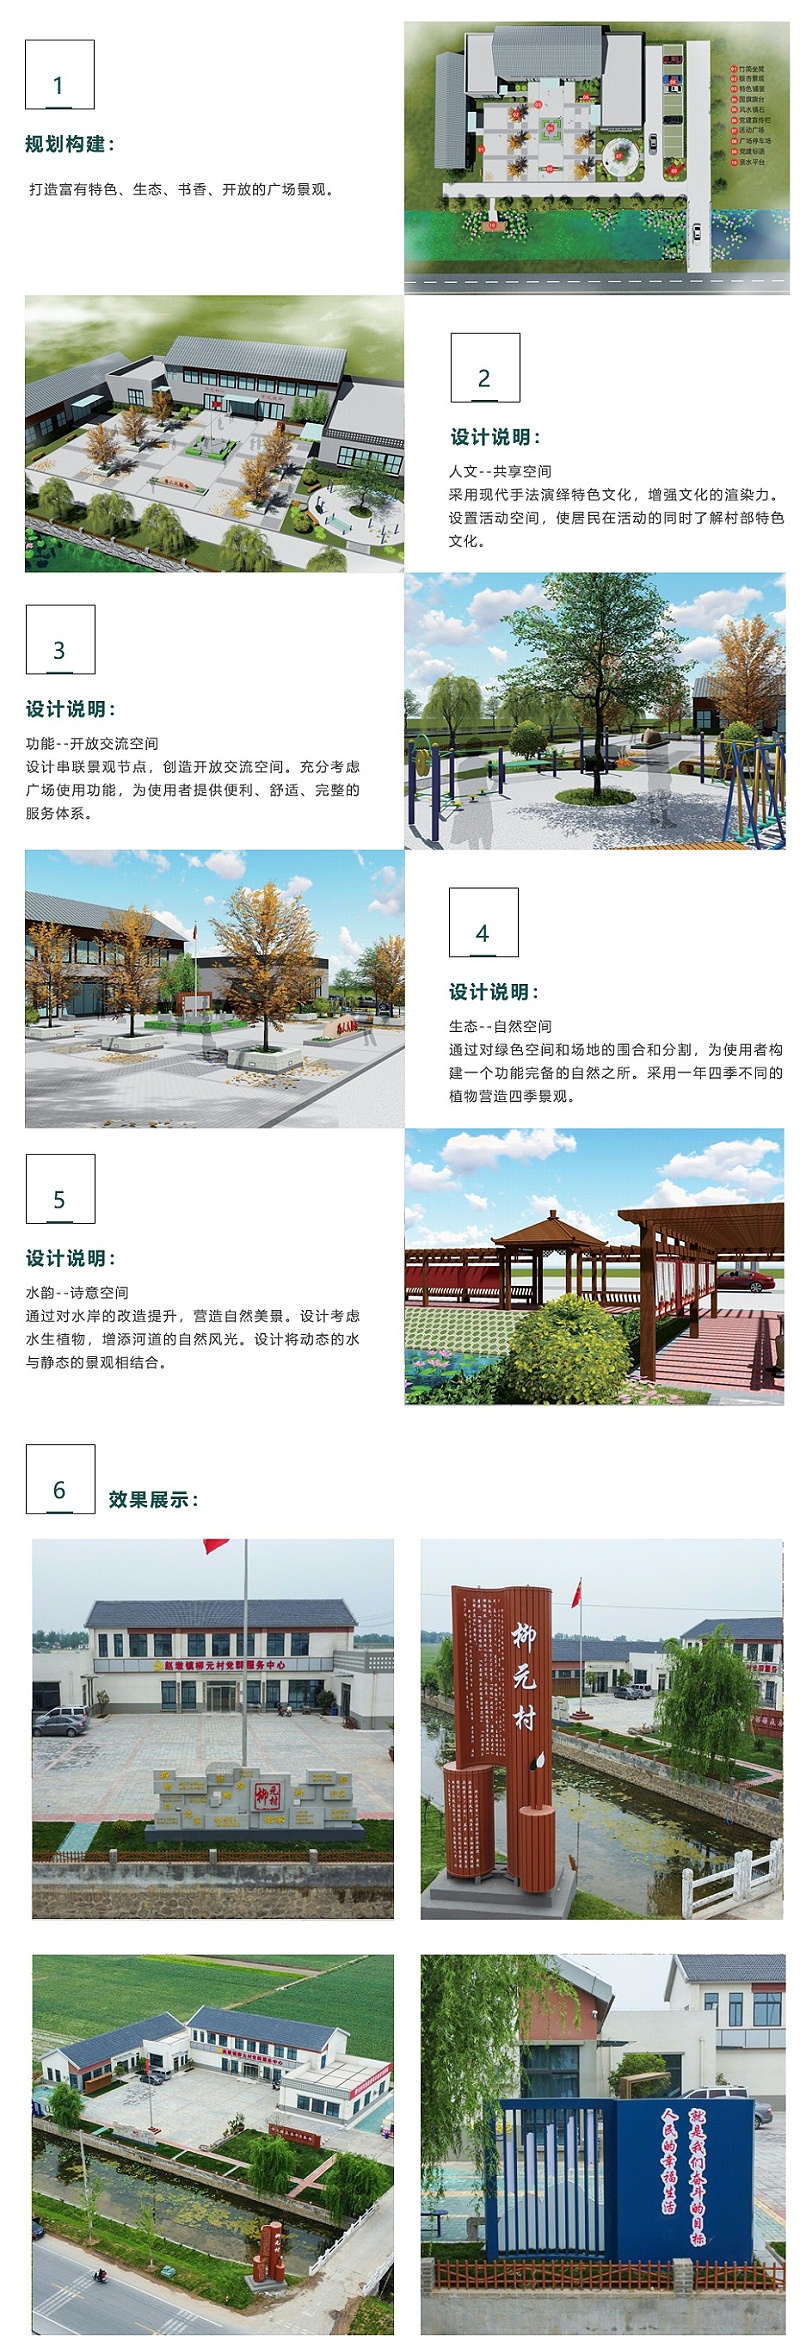 邳州市趙墩鎮柳元村景觀形象提升設計